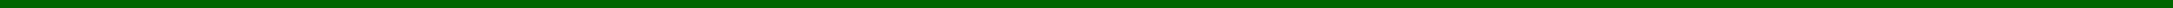 green dividing line